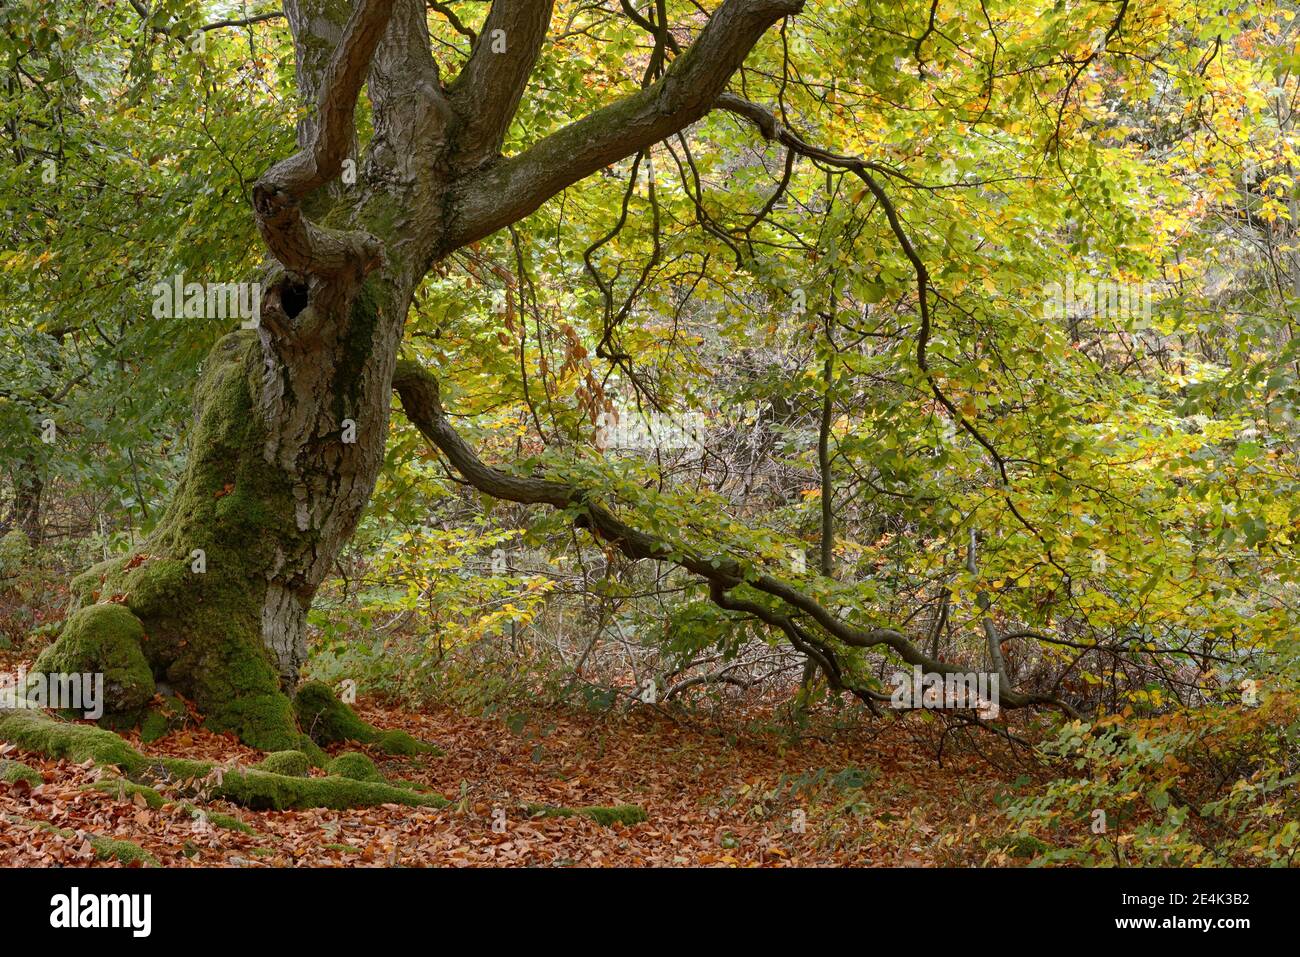 Alte hautenbuche (Fagus sylvatica), Halloh hutenwald bei Albertshausen, Bad Wildungen, Naturpark Kellerwald-Edersee, Hessen, Deutschland Stockfoto